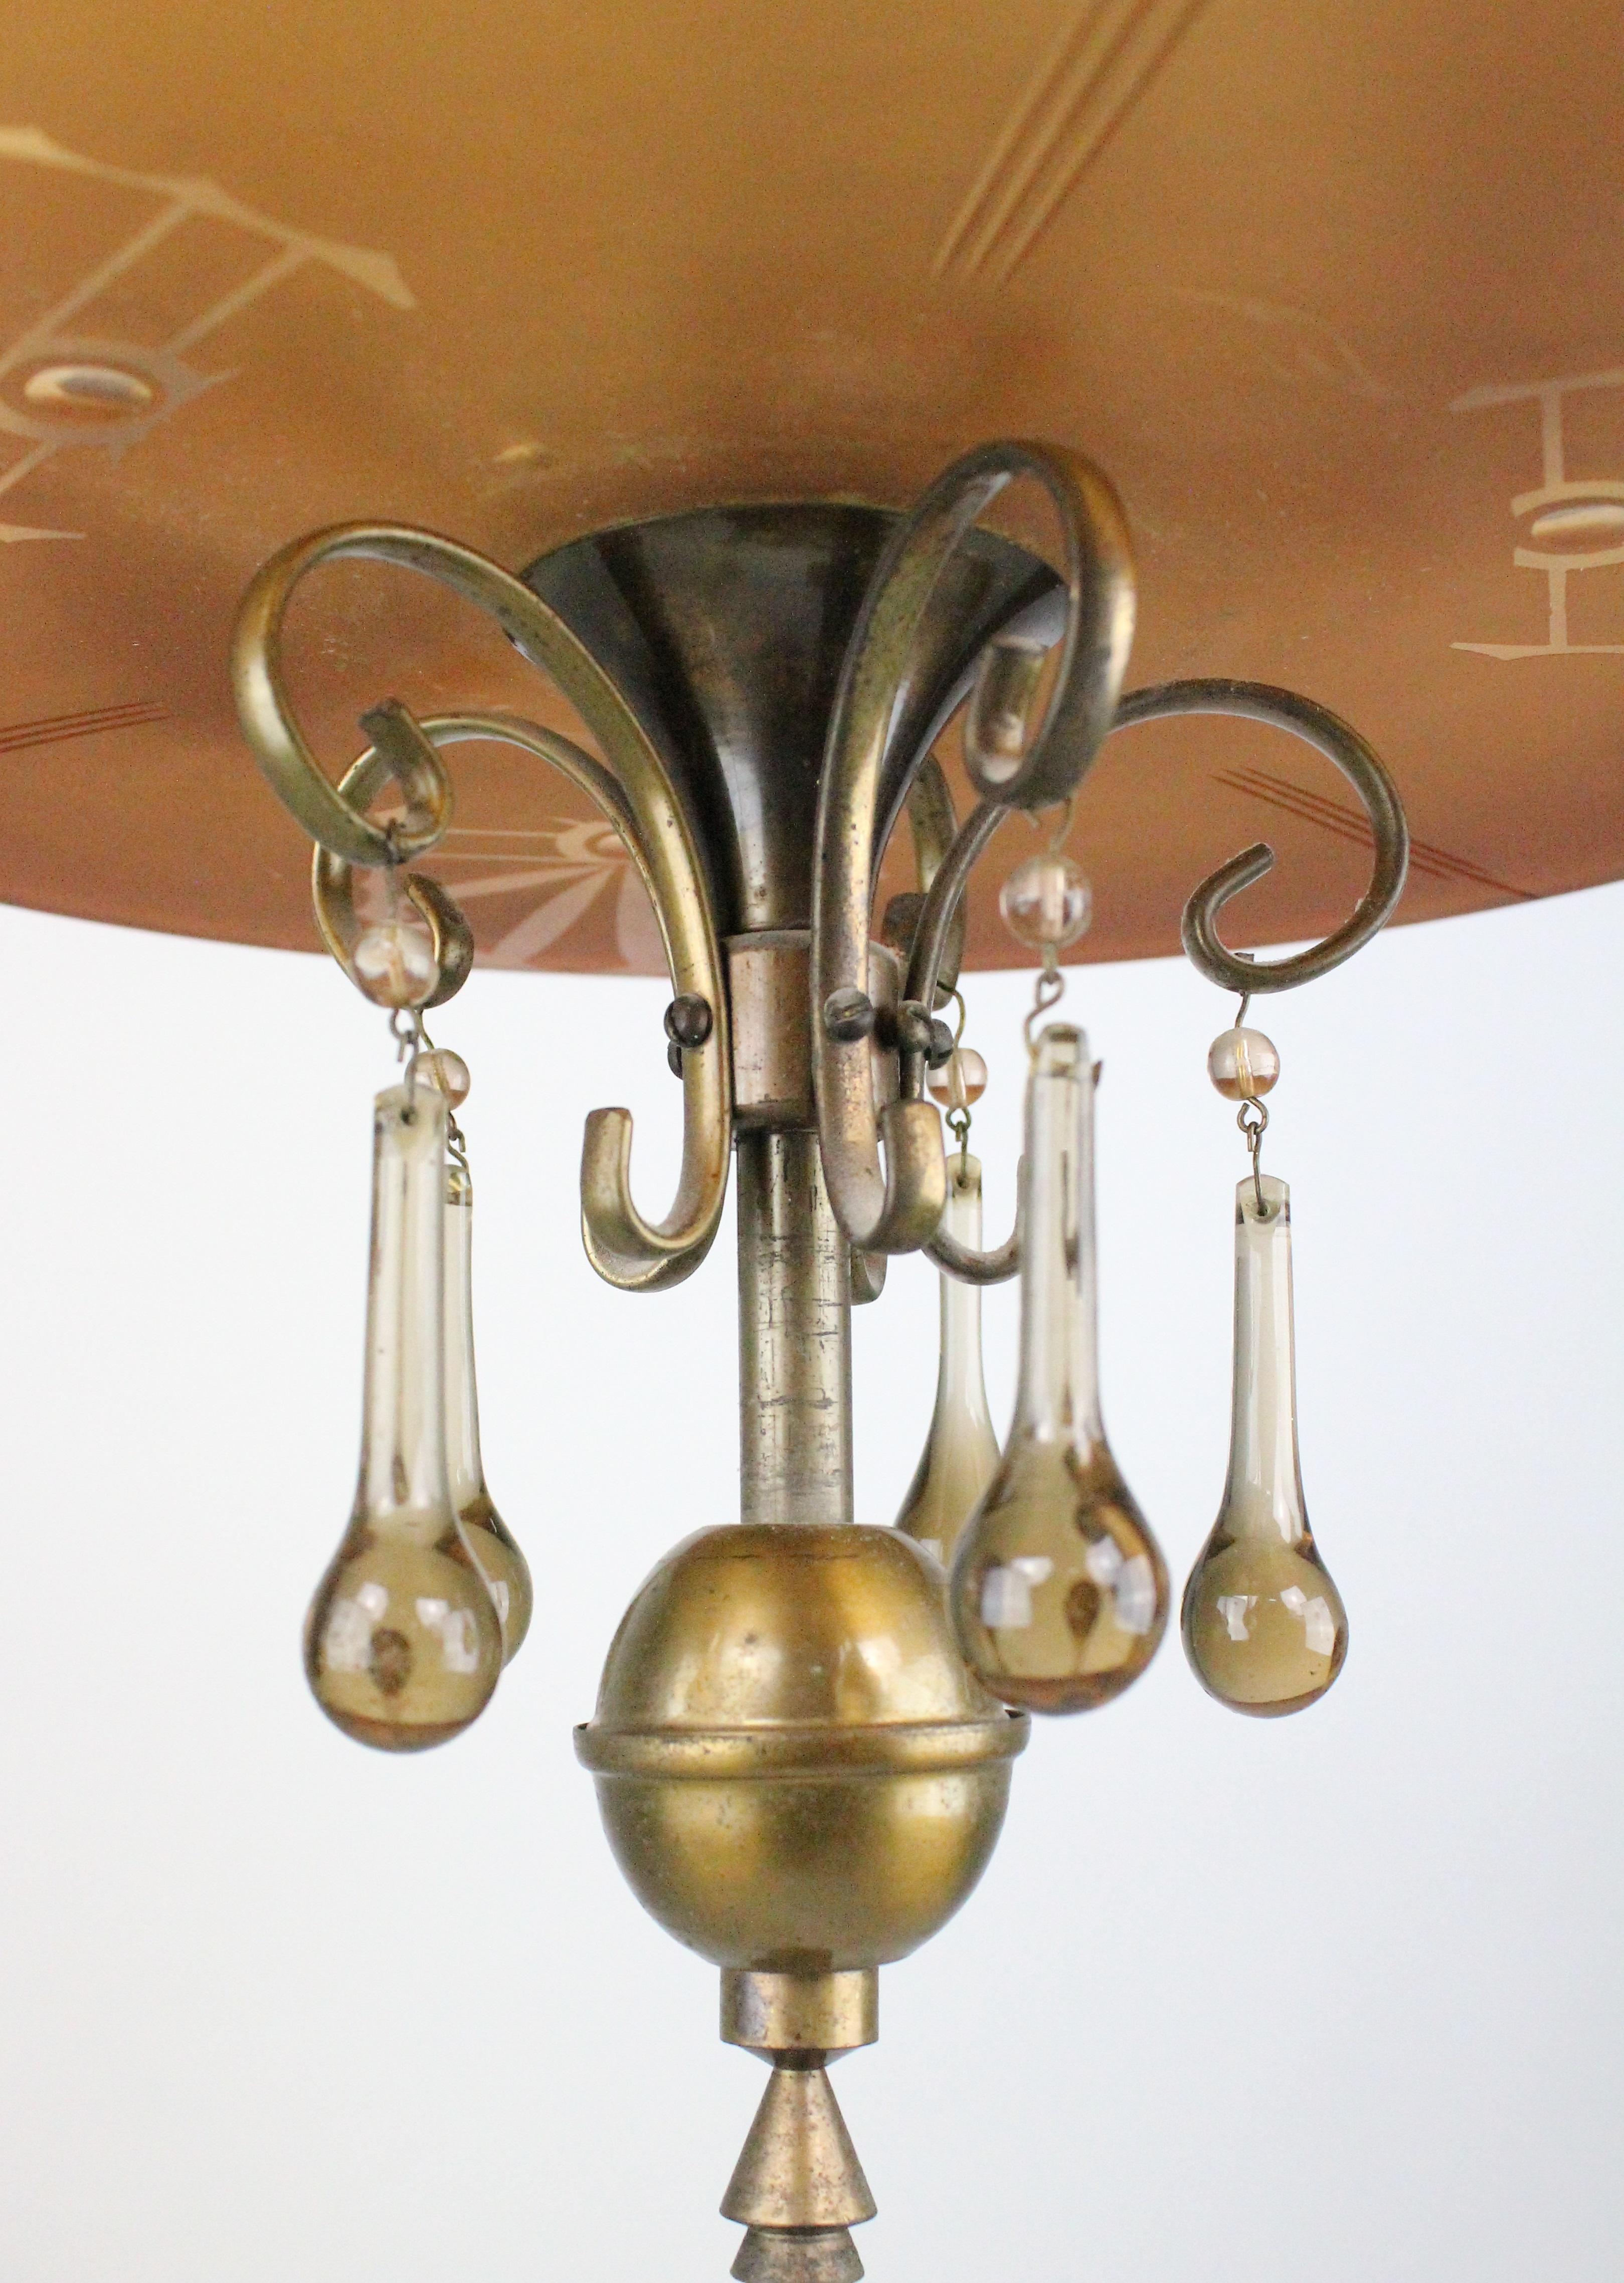 Merveilleux et inhabituel lustre suédois des années 1920 en verre ambré et en bronze.
En parfait état de marche. Excellent état d'origine. Aucun dommage. Très probablement fabriqué par Orrefors.
Supports pour quatre ampoules. Très élégant, fait